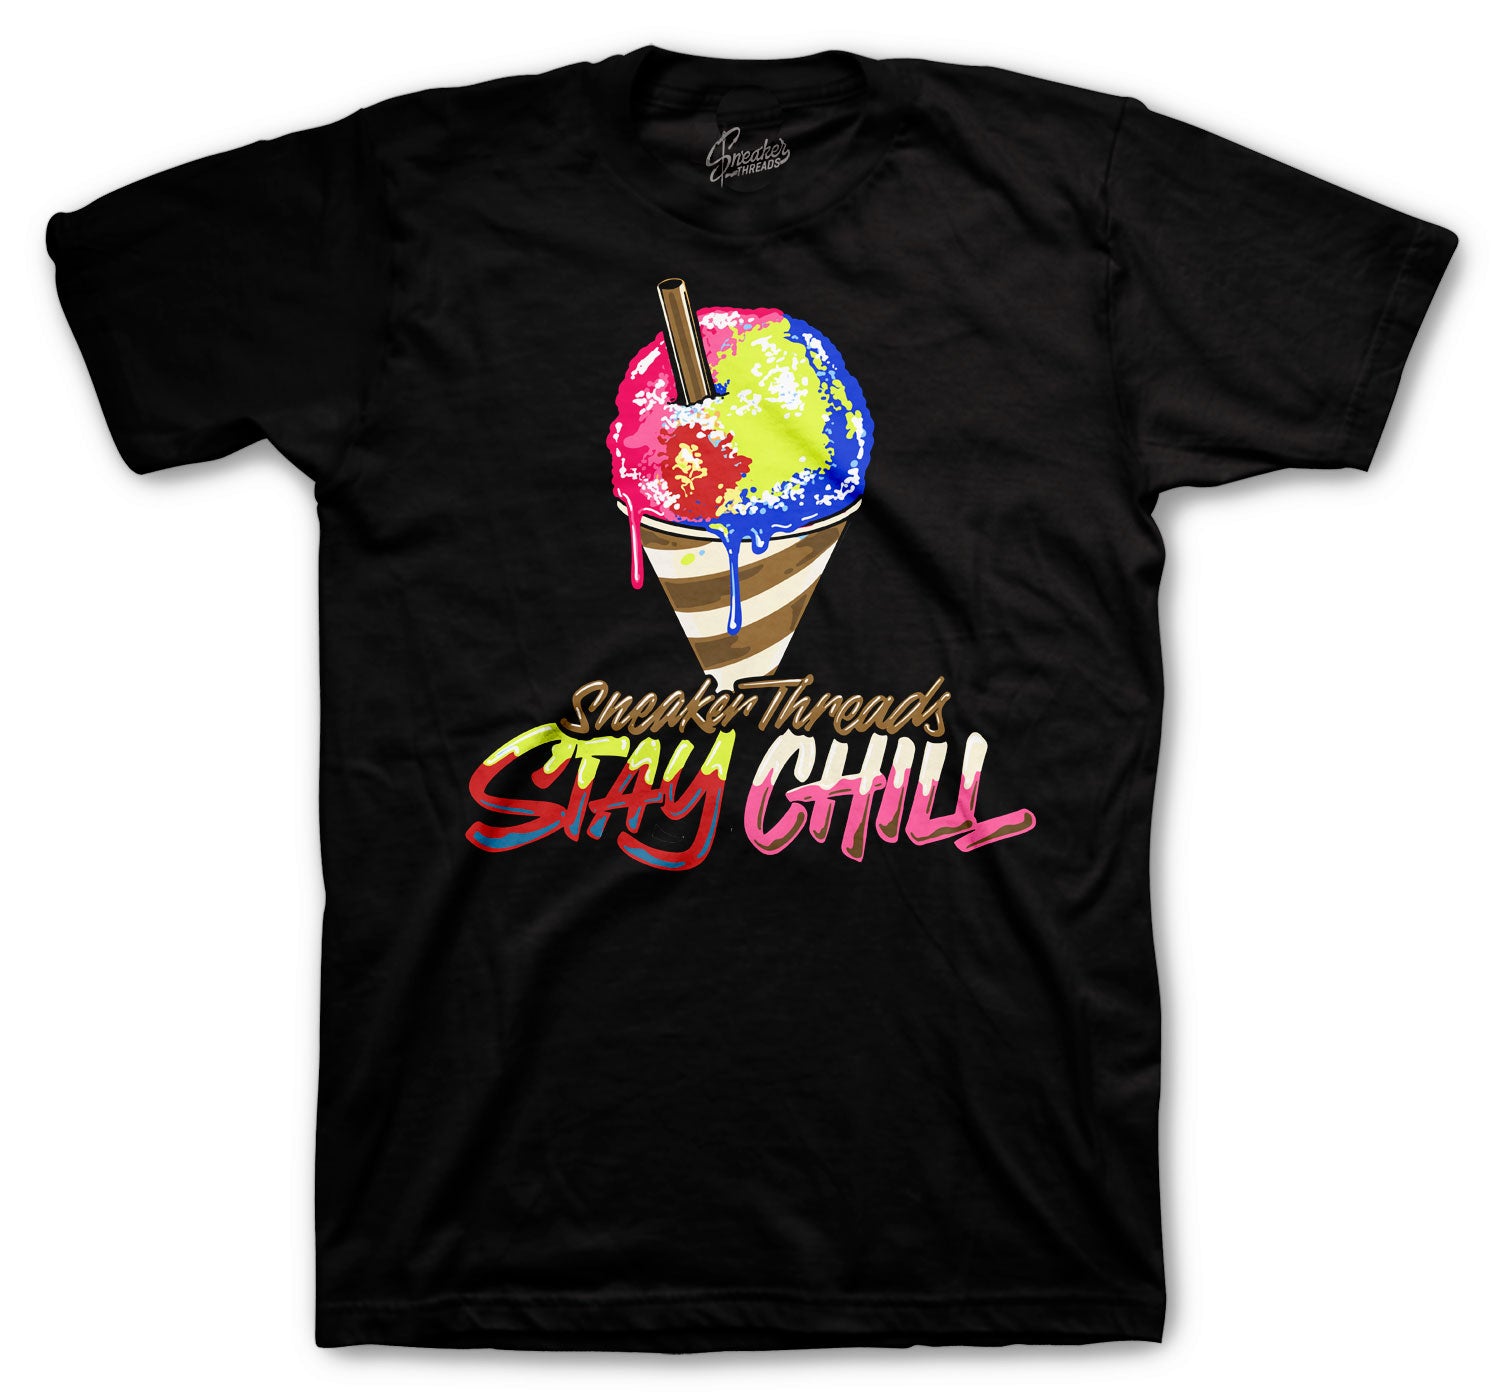 Retro 4 Wild Things Shirt - Stay Chill - Black